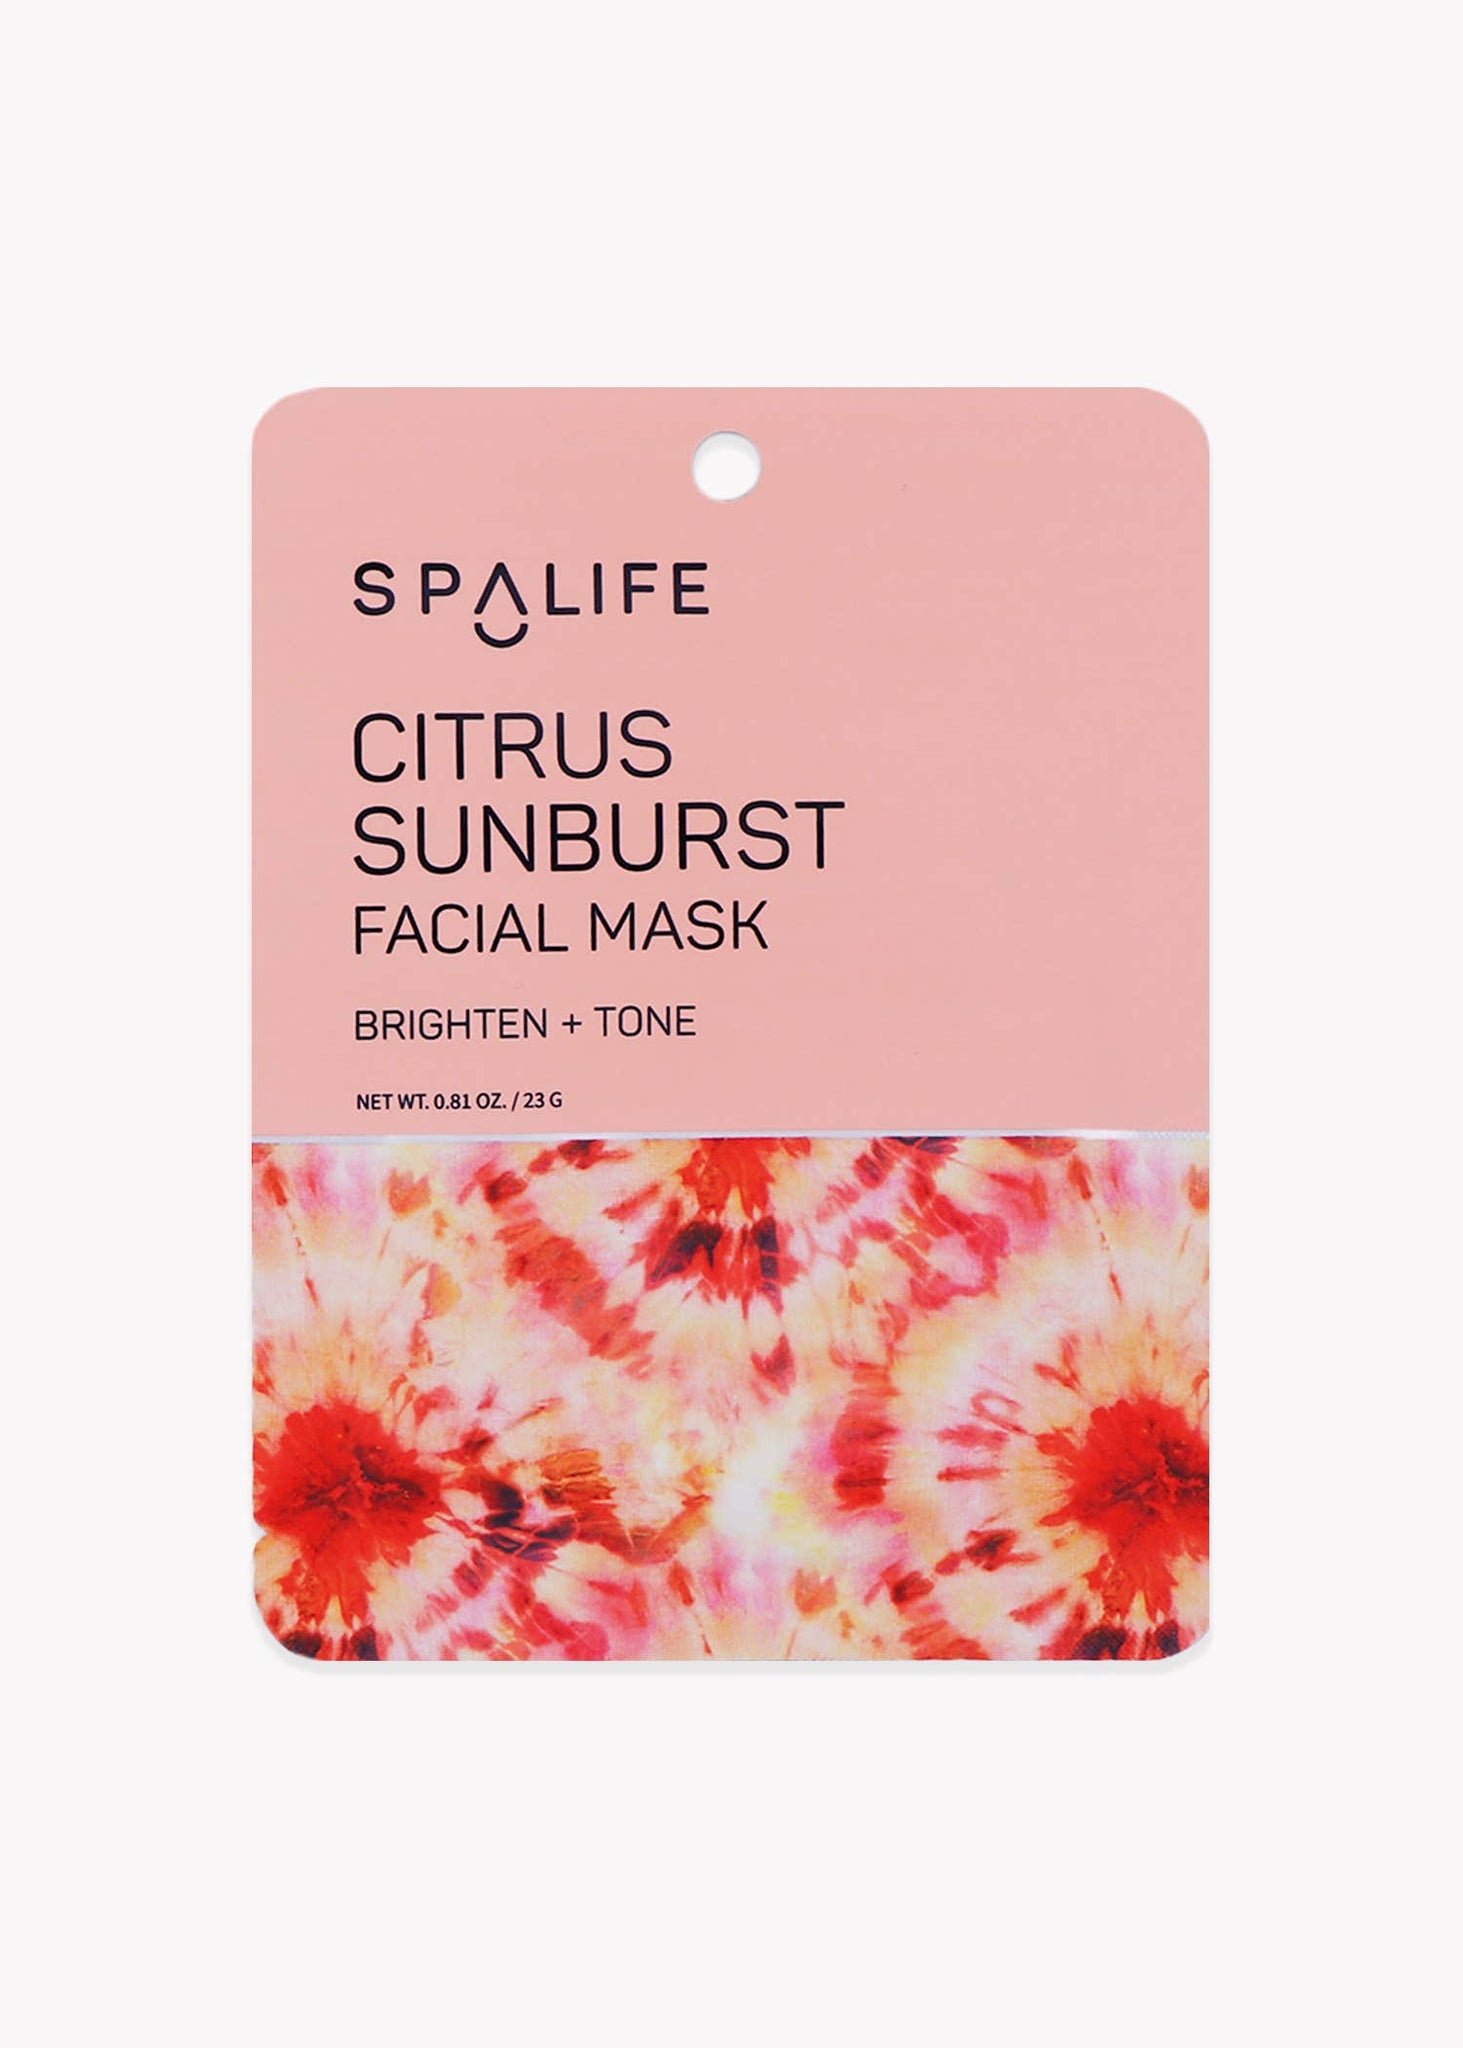 Citrus Sunburst Brighten & Tone Facial Mask